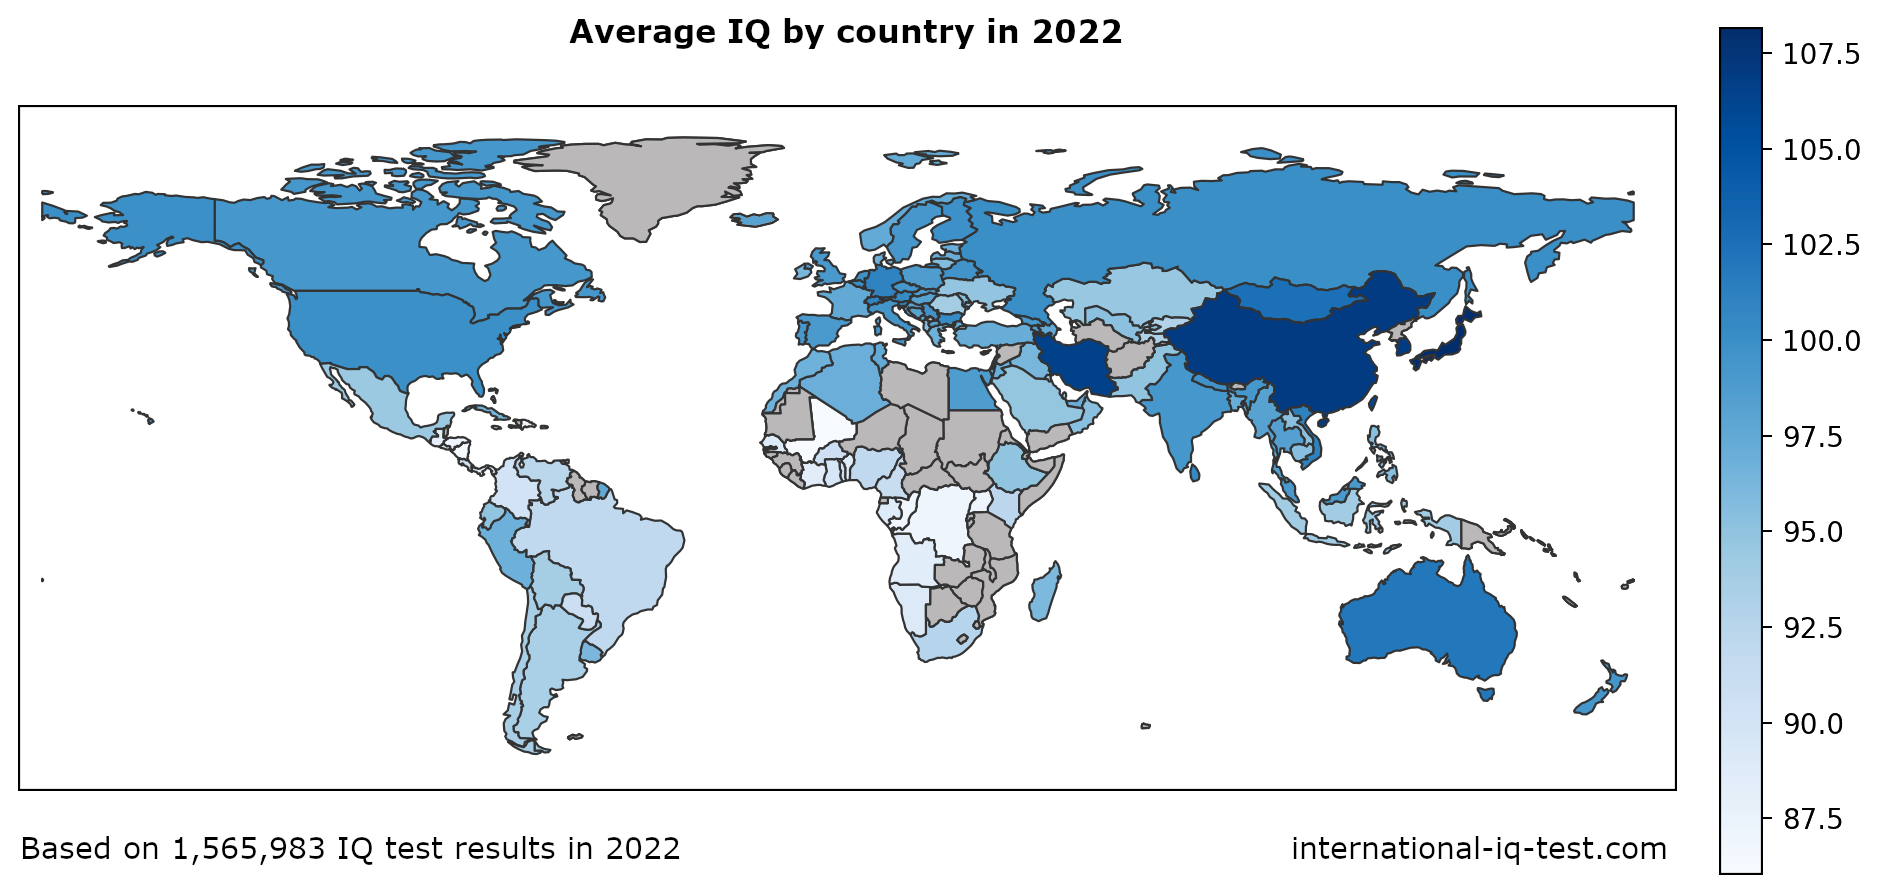 Mapa świata pokazująca średni iloraz inteligencji na kraj w 2022 r. przy użyciu odcieni niebieskiego od najjaśniejszego do najciemniejszego